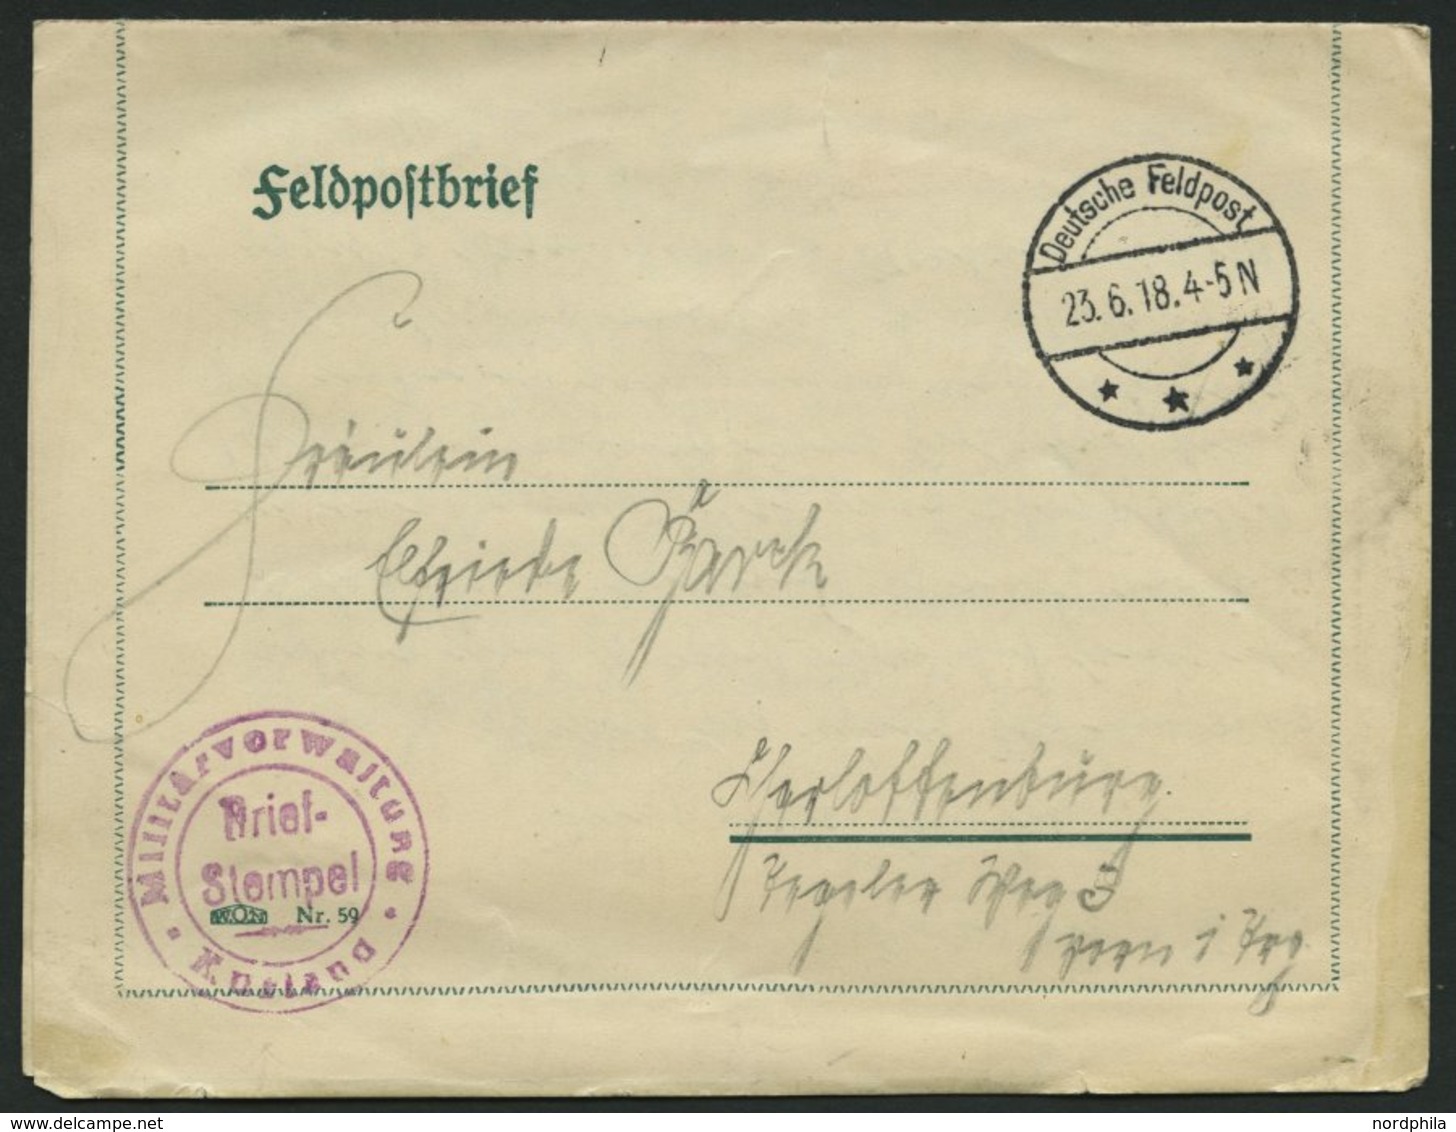 DT. FP IM BALTIKUM 1914/18 Militätverwaltung Kurland, Rotvioletter Briefstempel, Mit Tarnstempel DEUTSCHE FELDPOST *** A - Latvia